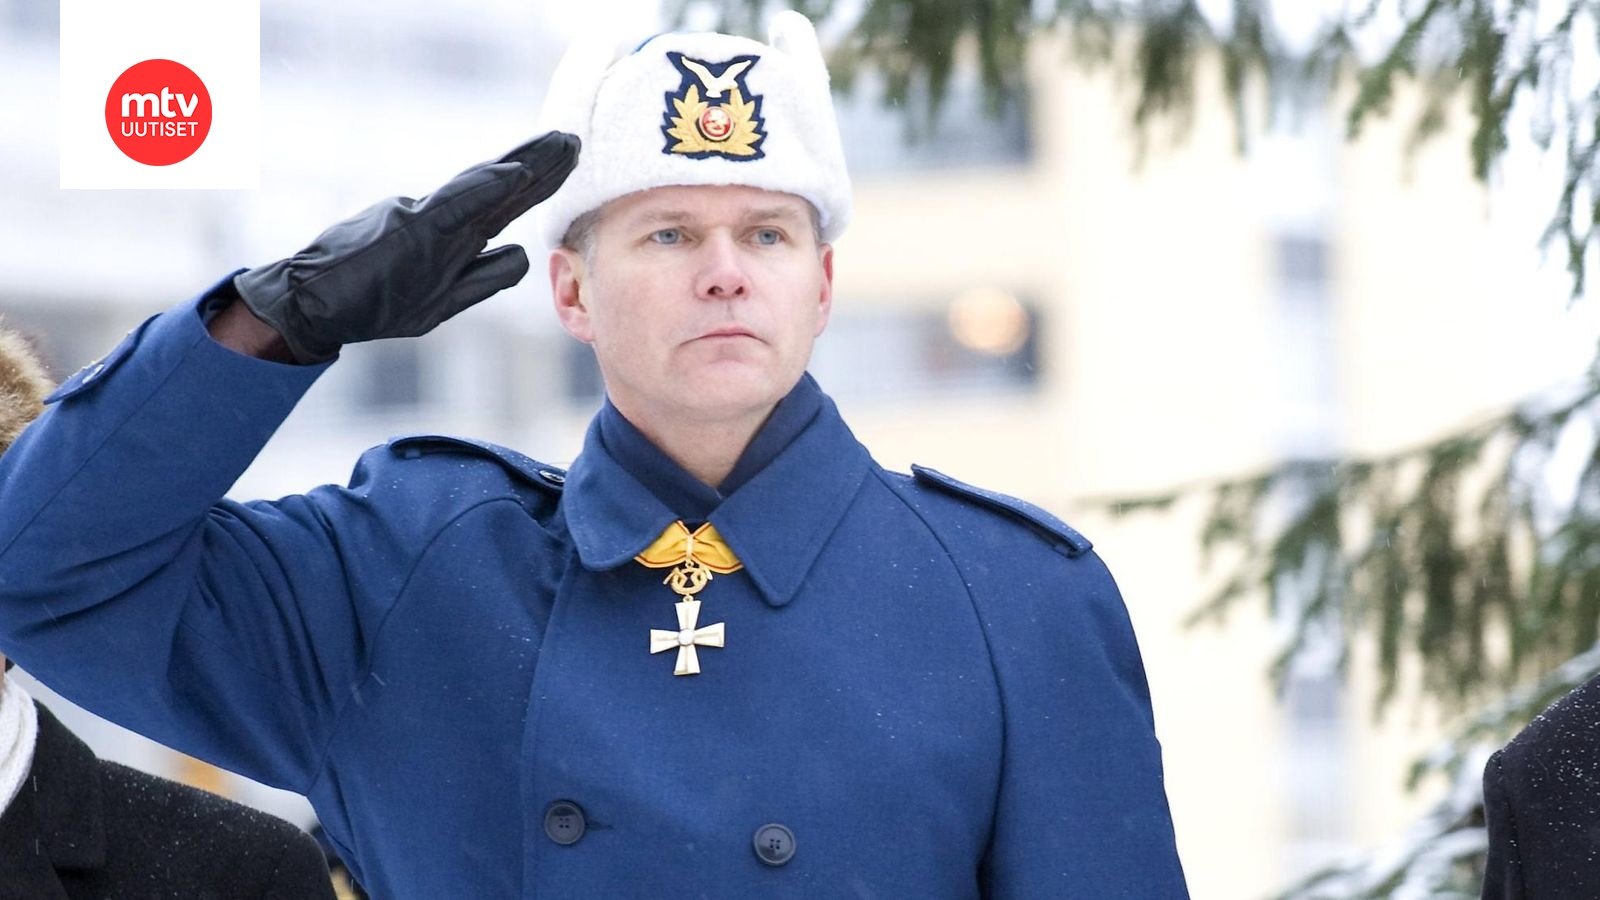 Finnish. Форма Генерала Финляндии. Форма армии Финляндии. ВВС Финляндии форма. Финские ВВС.